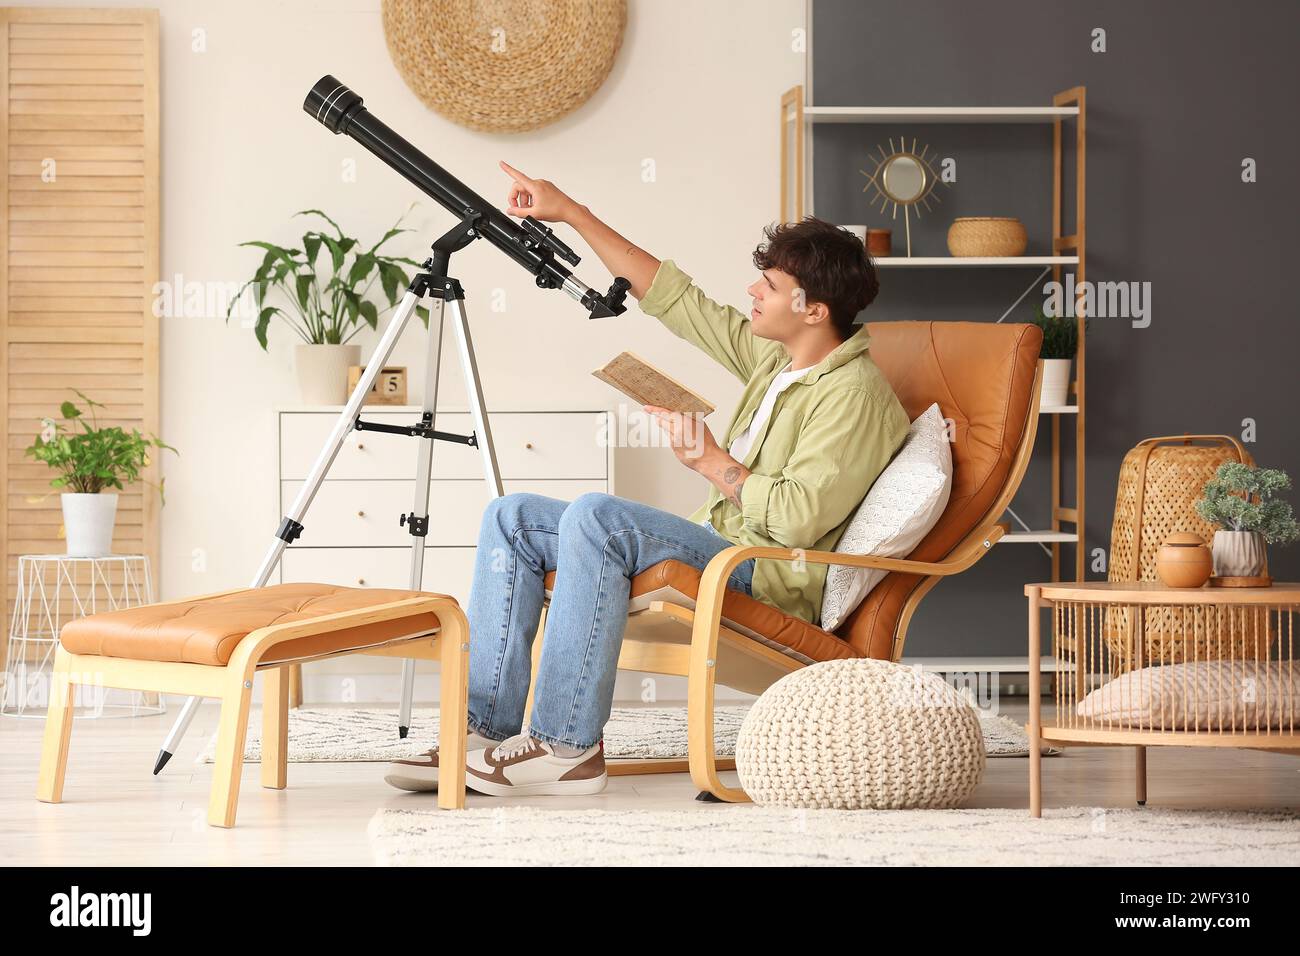 Jeune homme avec télescope et cahier assis dans un fauteuil Banque D'Images